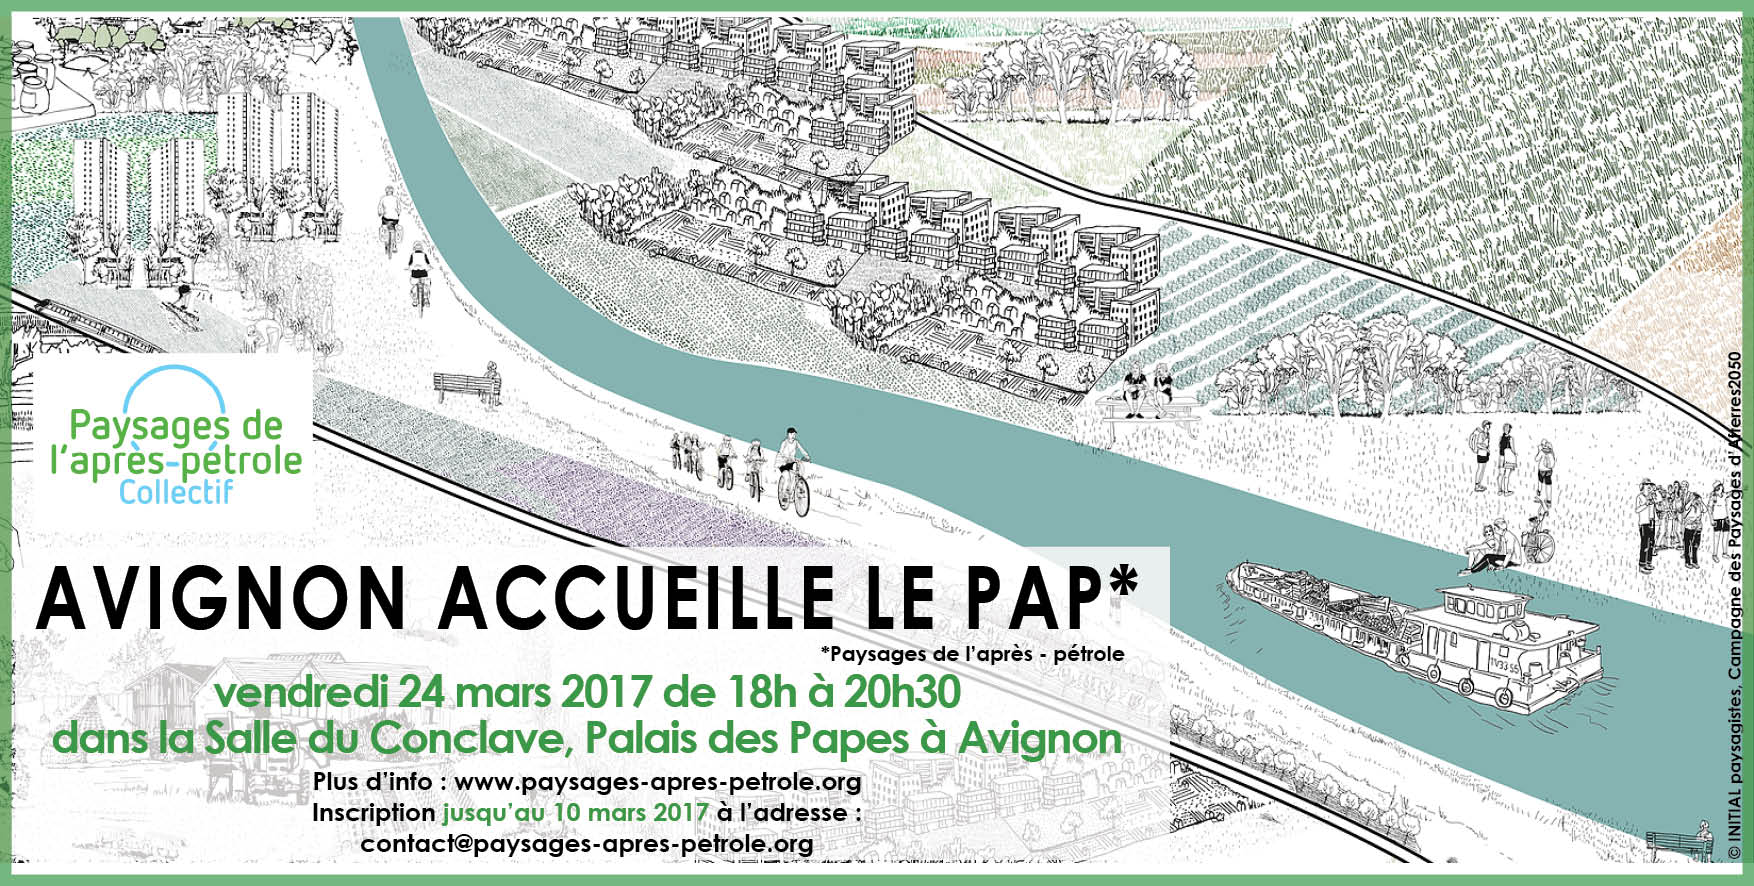 Avignon accueille le collectif PAP – workshop étudiant